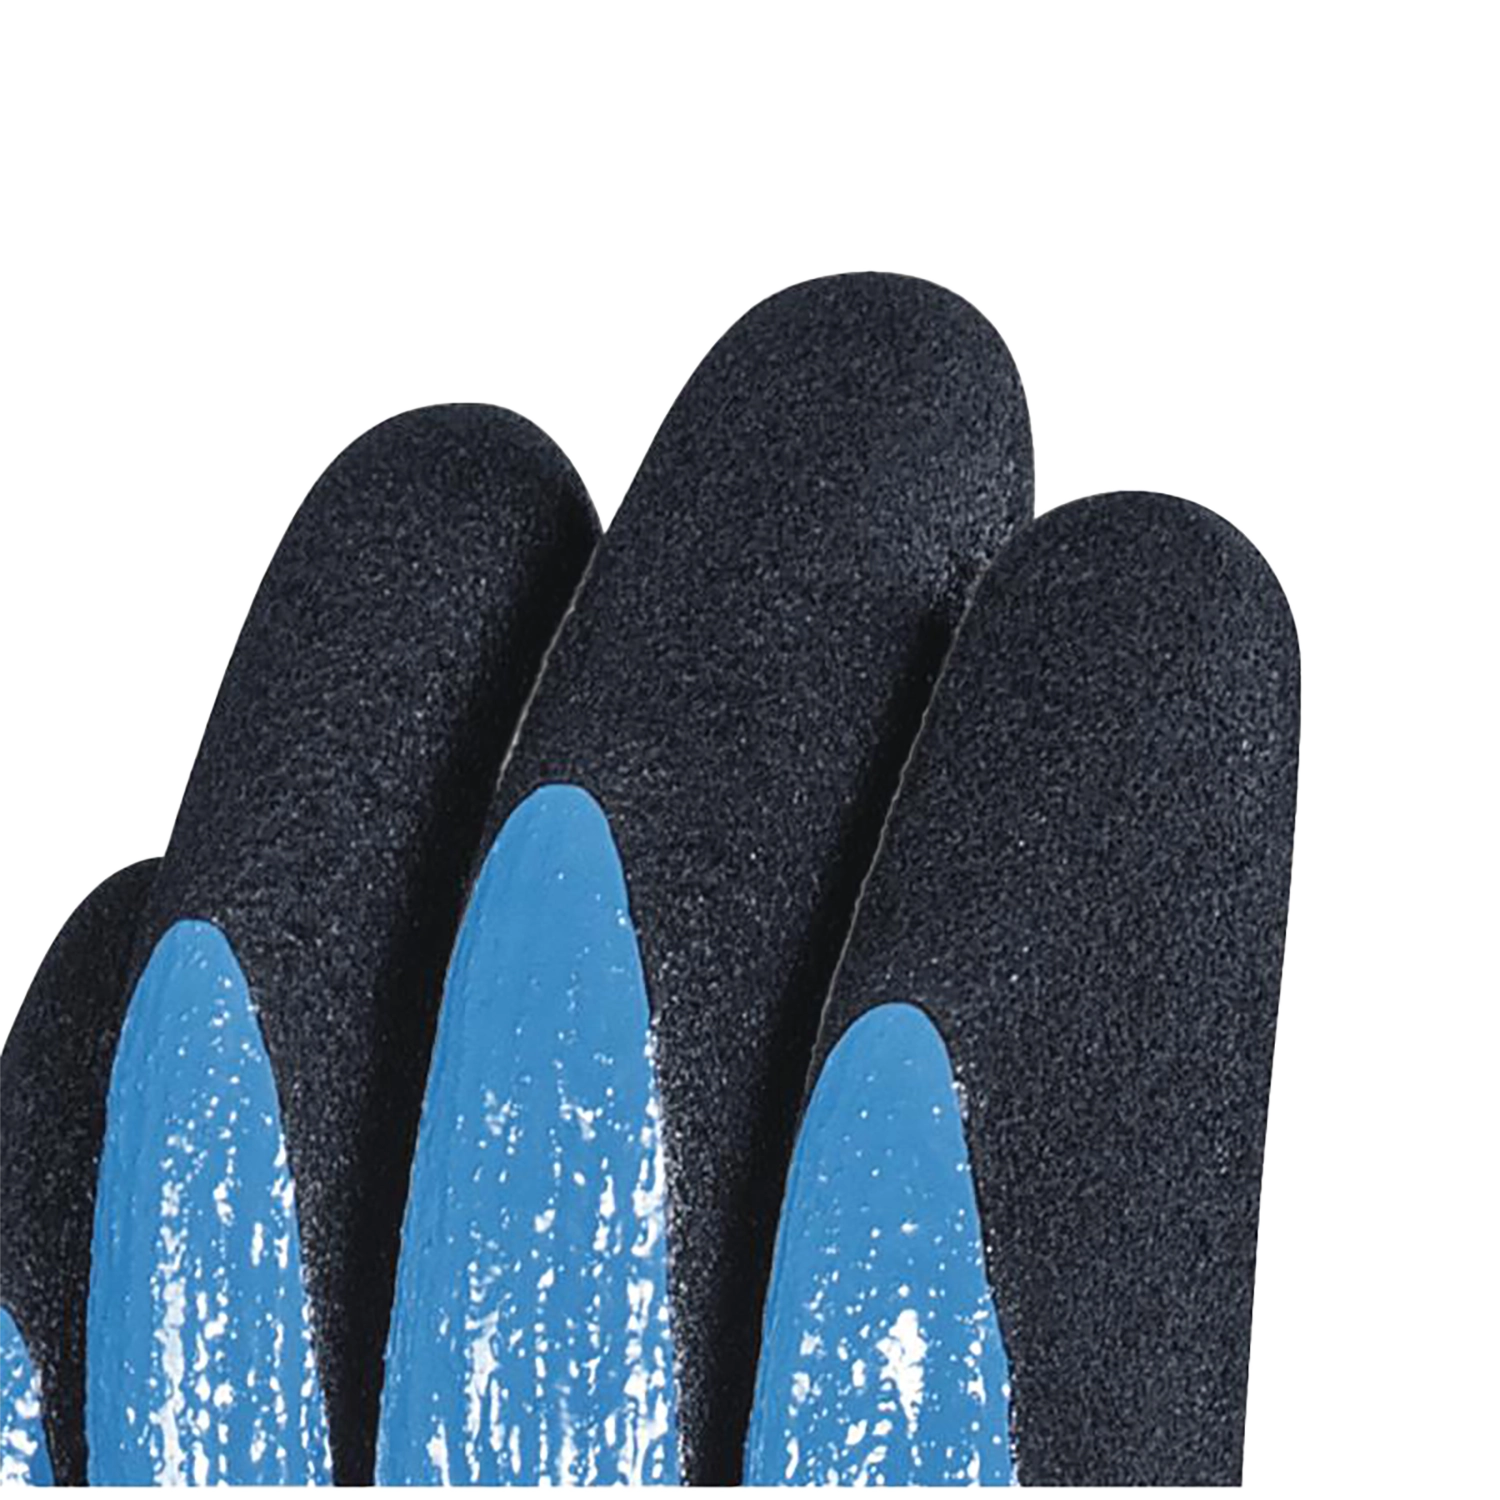 Polyamide handschoen met nitril coating -  wet & dry vv636 - blauw  -maat 10